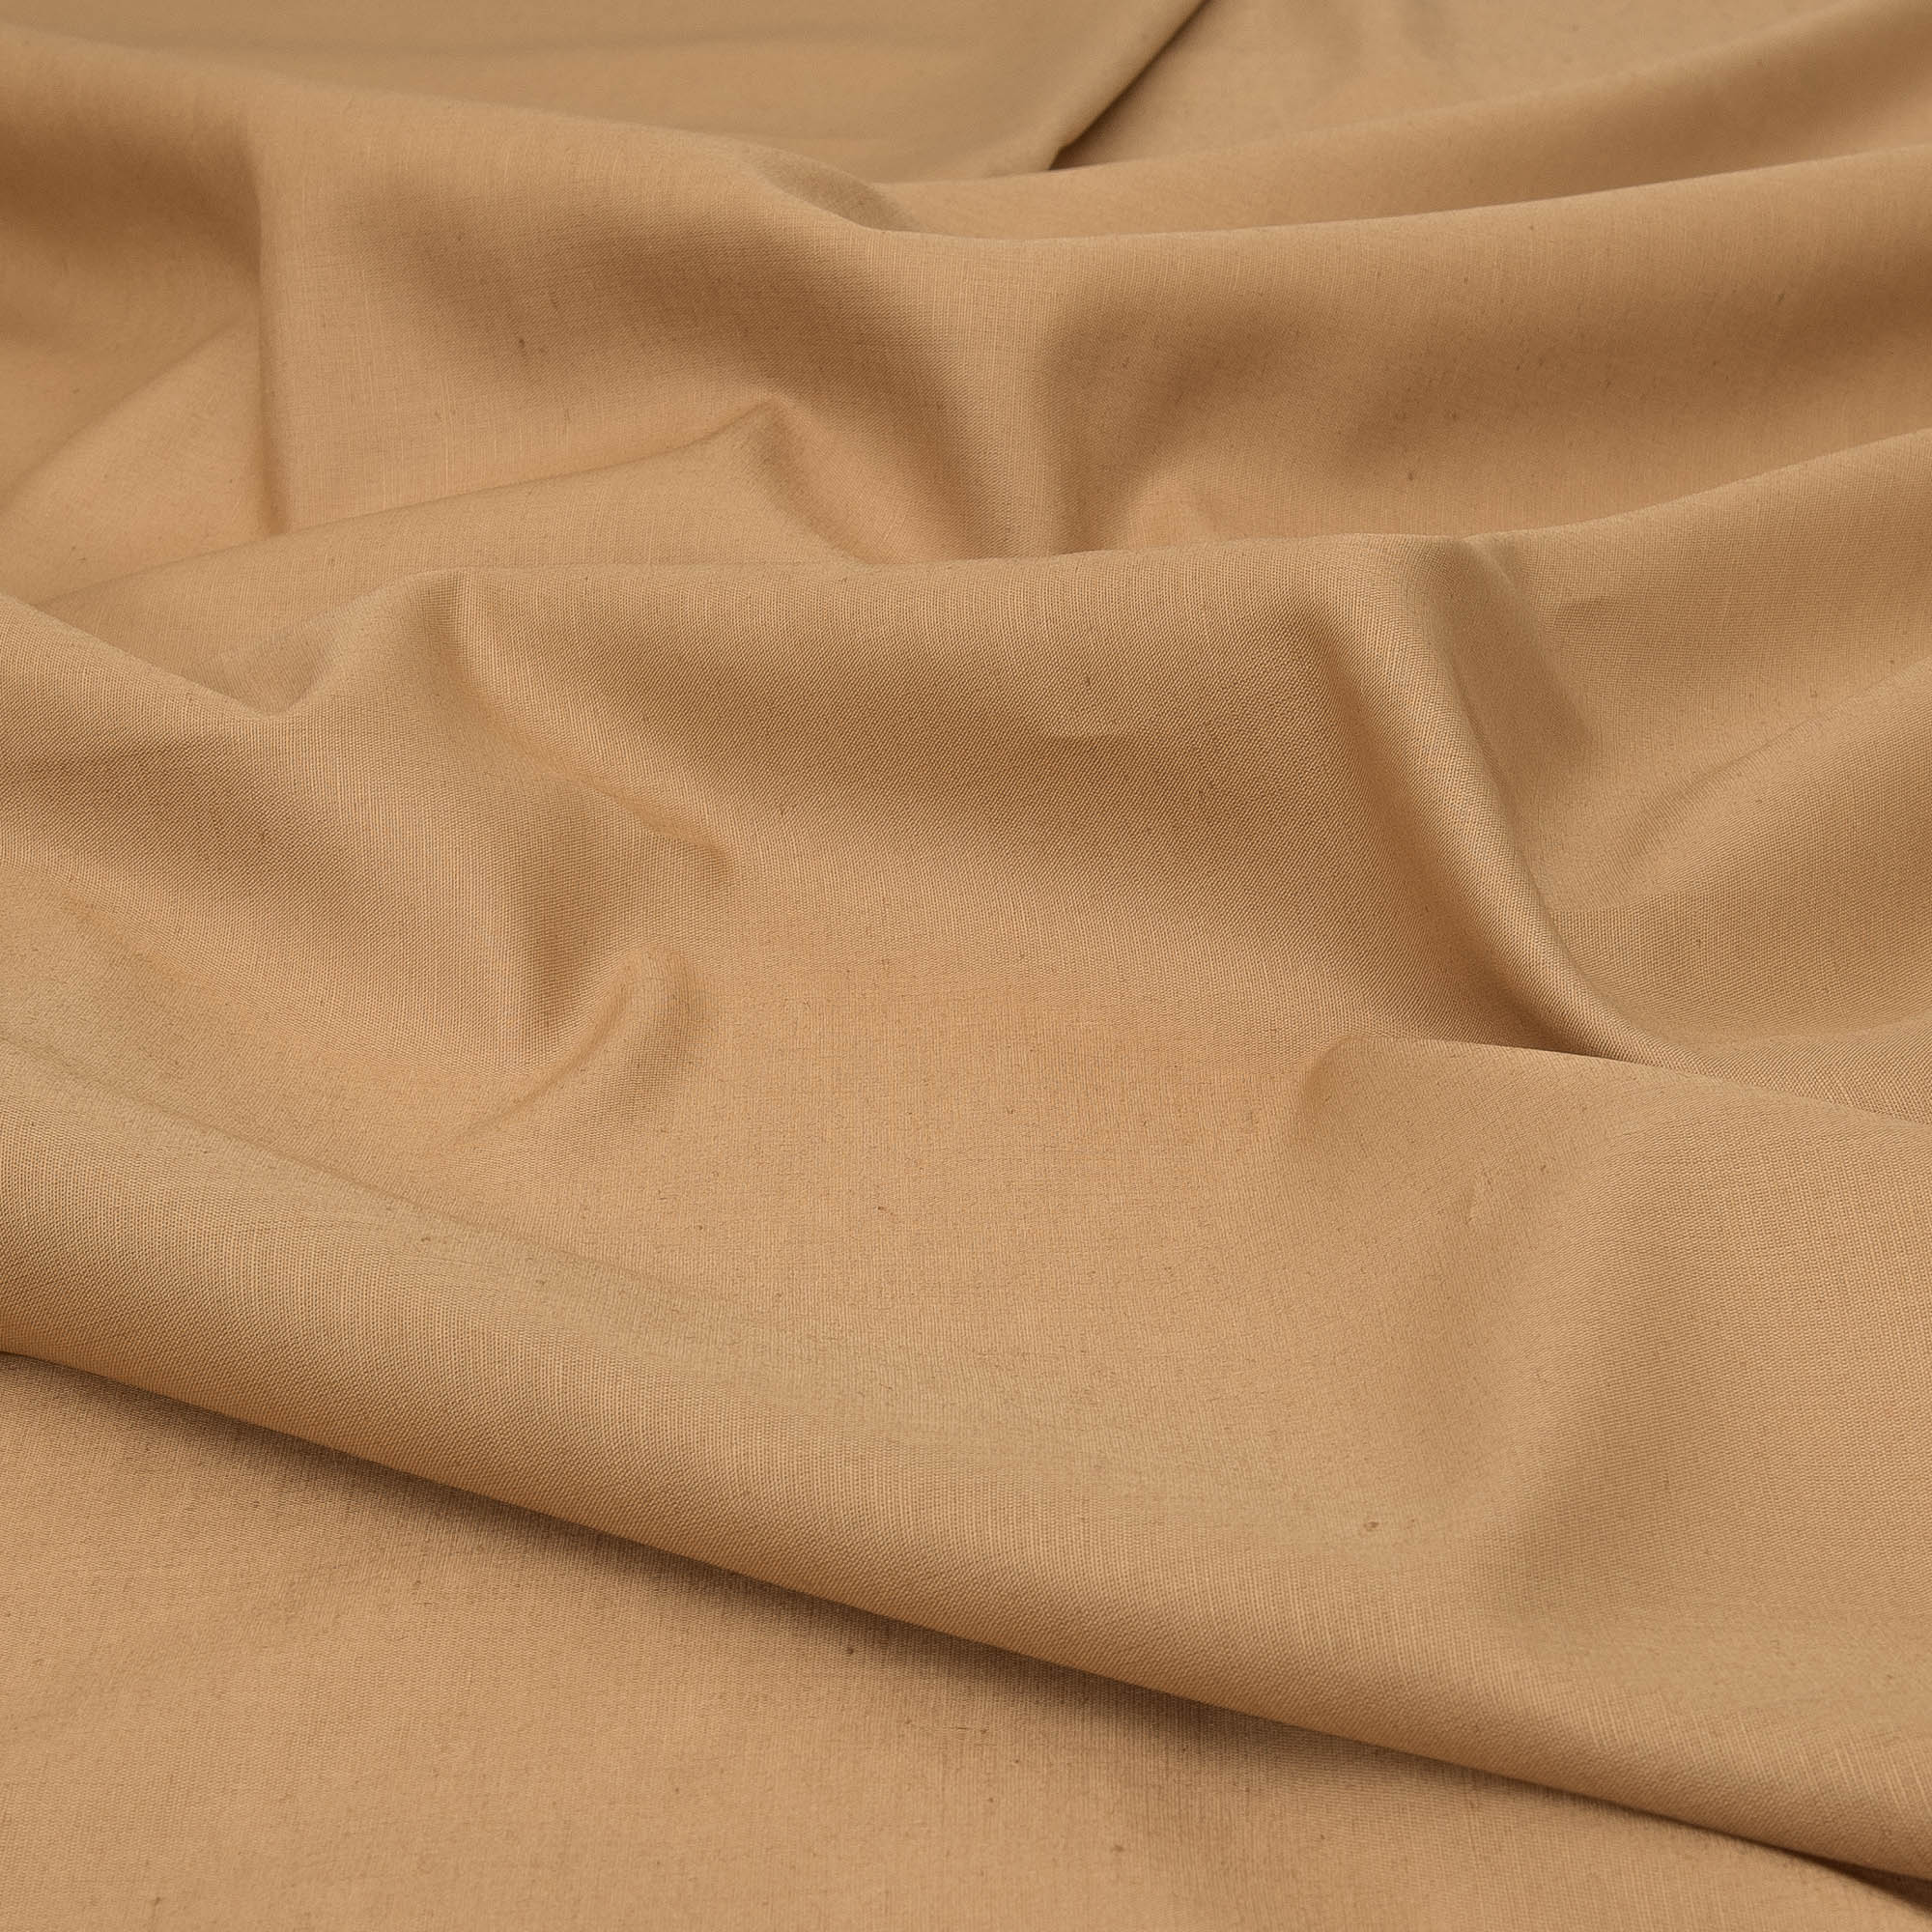 https://www.delinum.com.au/cdn/shop/products/Light-Brown-Linen-Blend-Fabric-Linen-Blend-Fabrics_da0294ba-ba06-4490-a33d-dc8ecb17b4cf_2000x.jpg?v=1629533341